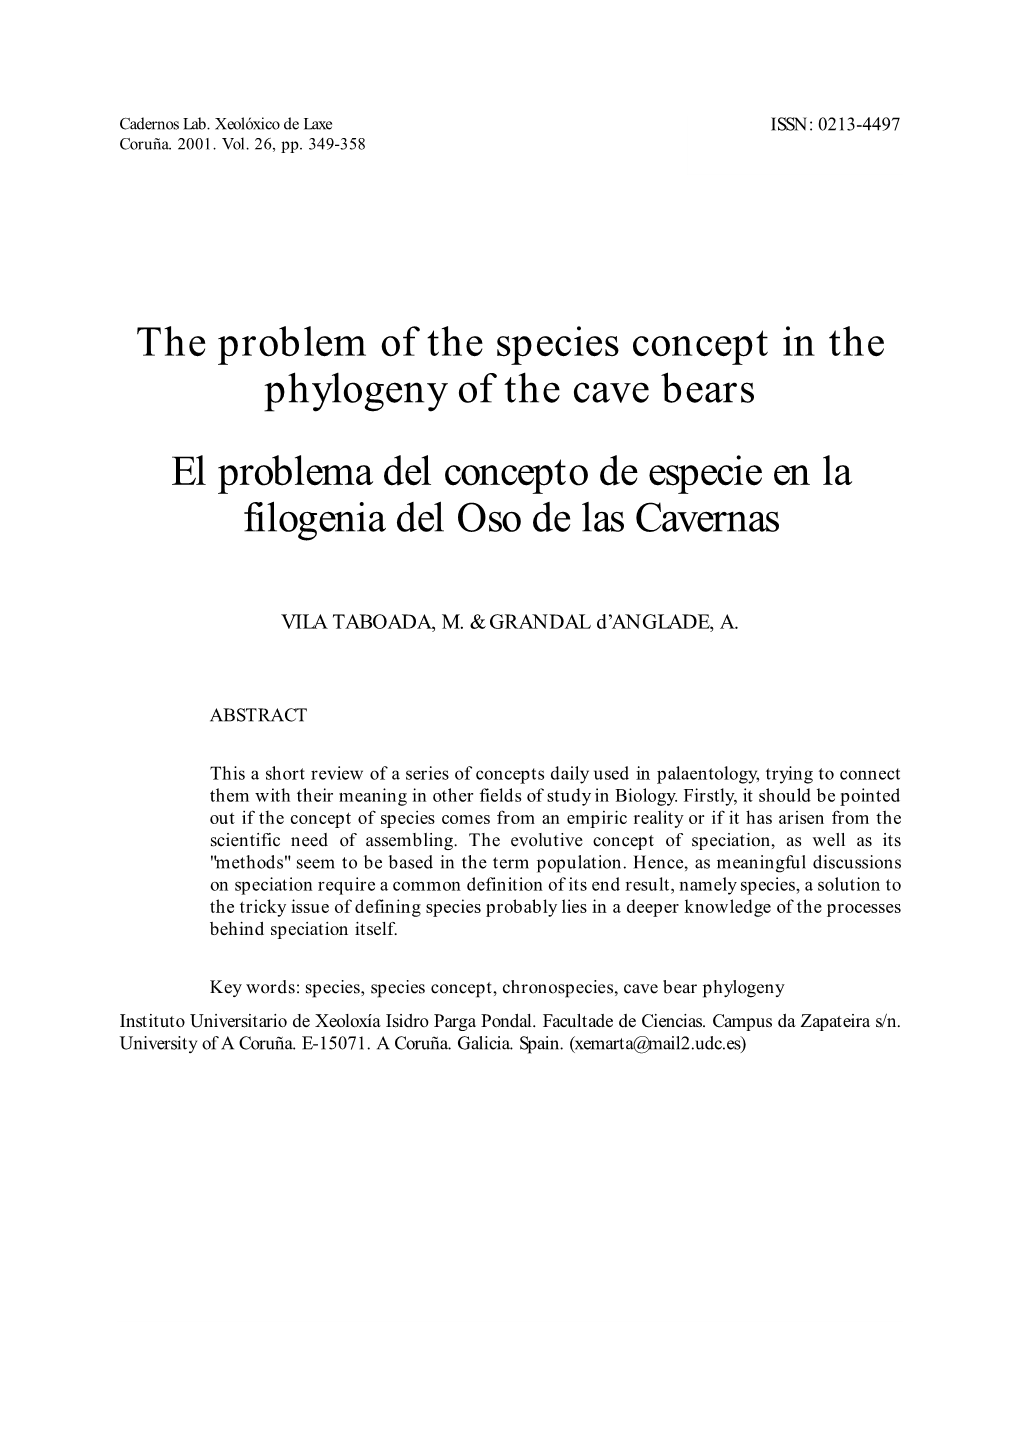 The Problem of the Species Concept in the Phylogeny of the Cave Bears El Problema Del Concepto De Especie En La Filogenia Del Oso De Las Cavernas